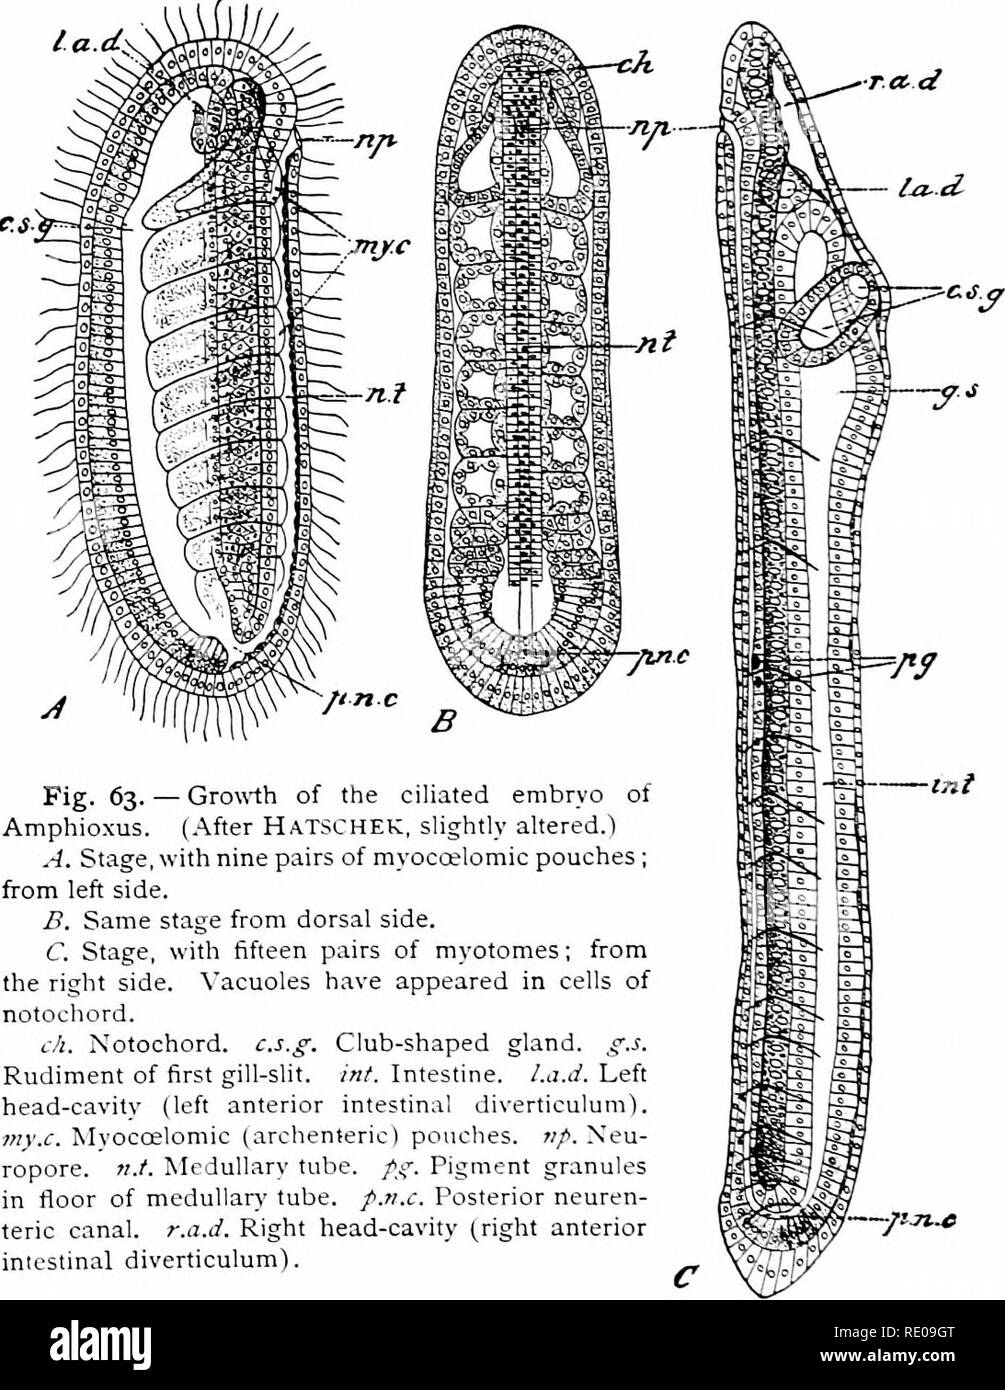 . Amphioxus und die Abstammung der Wirbeltiere. Amphioxus; Seescheiden; Hemichordata. ii 6 DEVELOPMEXT von AMPHIOXUS. des ersten Myotome und erstreckt sich von der rechten Seite unter - Neath auf die linke Seite des Körpers. (Vgl. Abbn. 63A und 71.) Das groove vertieft, und die Margen verschmolz, und so ist es. Abb. 63. - Wachsen - th Der Ciliated embryo von Amphio. xus. (. N ach Hatschek, leicht abgeändert.") A. Bühne, mit neun Paare von myocoelomic Beutel; auf der linken Seite. B. in der gleichen Stufe von dorsal. C. in der Bühne, mit fünfzehn Paare der Myotome; von der rechten Seite. Vakuolen haben in Zellen der notocho erschienen Stockfoto